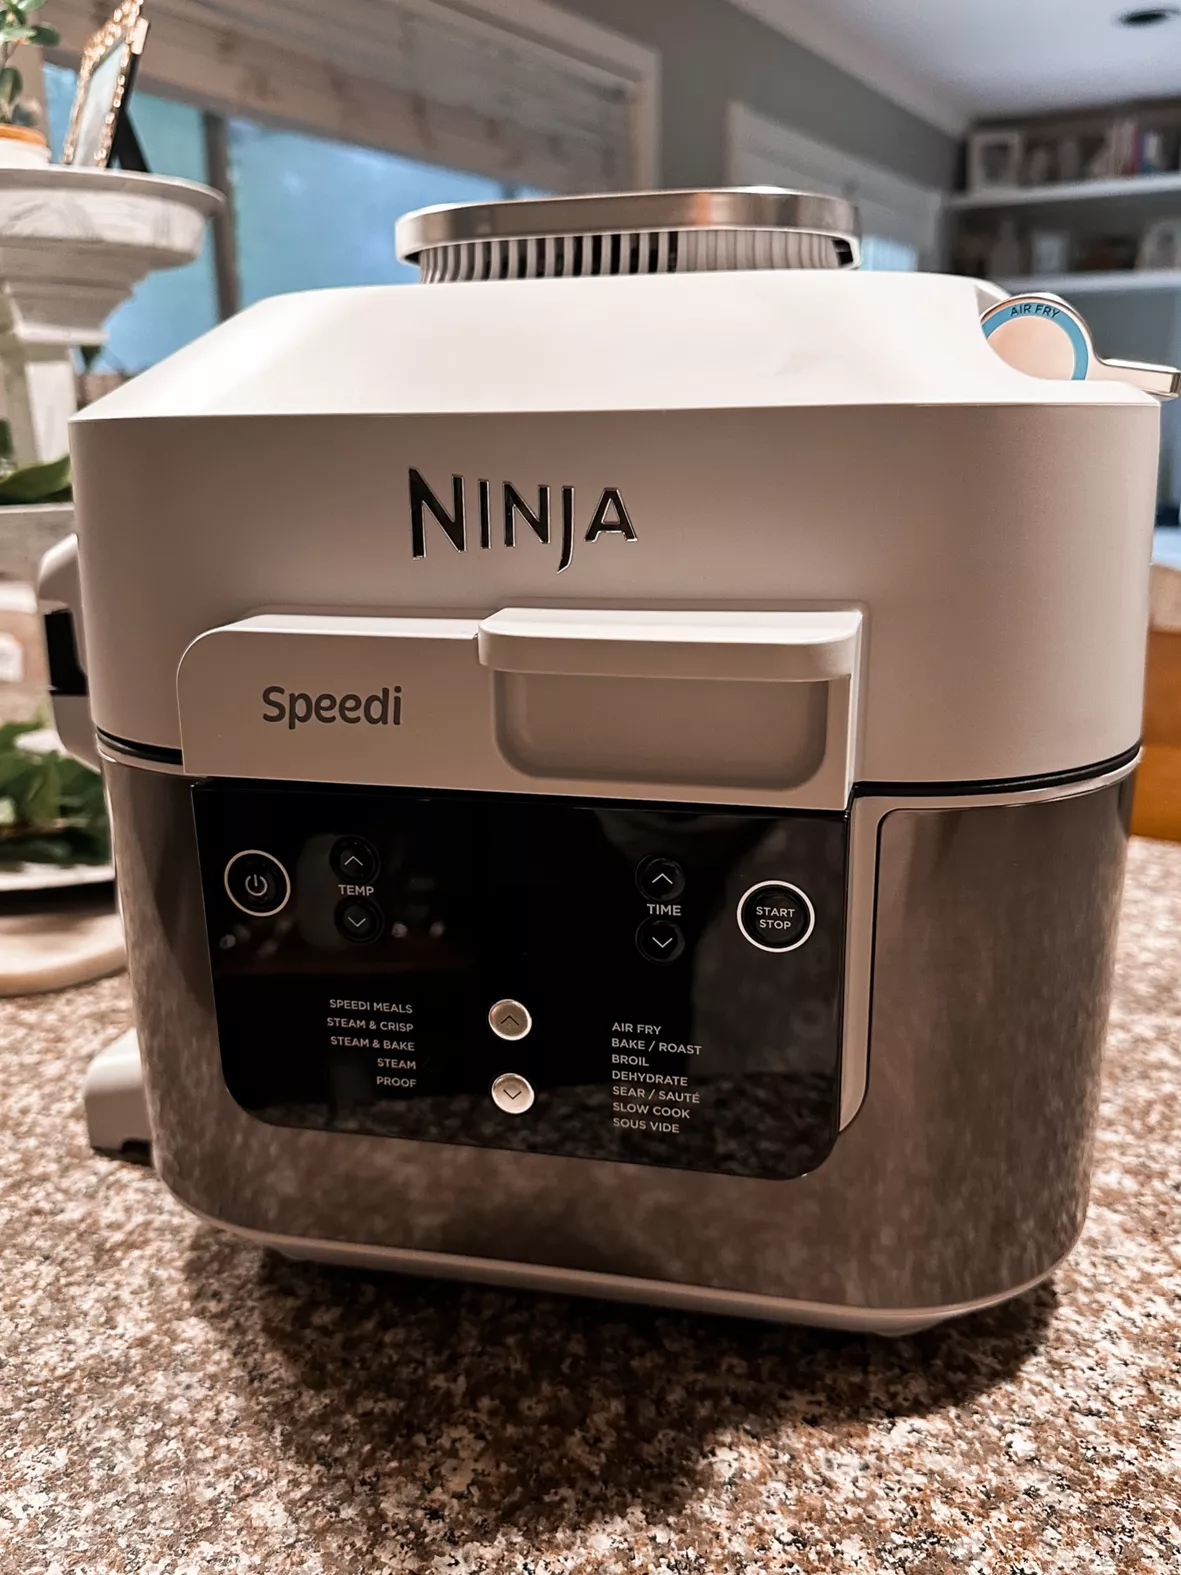 Ninja Speedi Rapid Cooker and Air Fryer